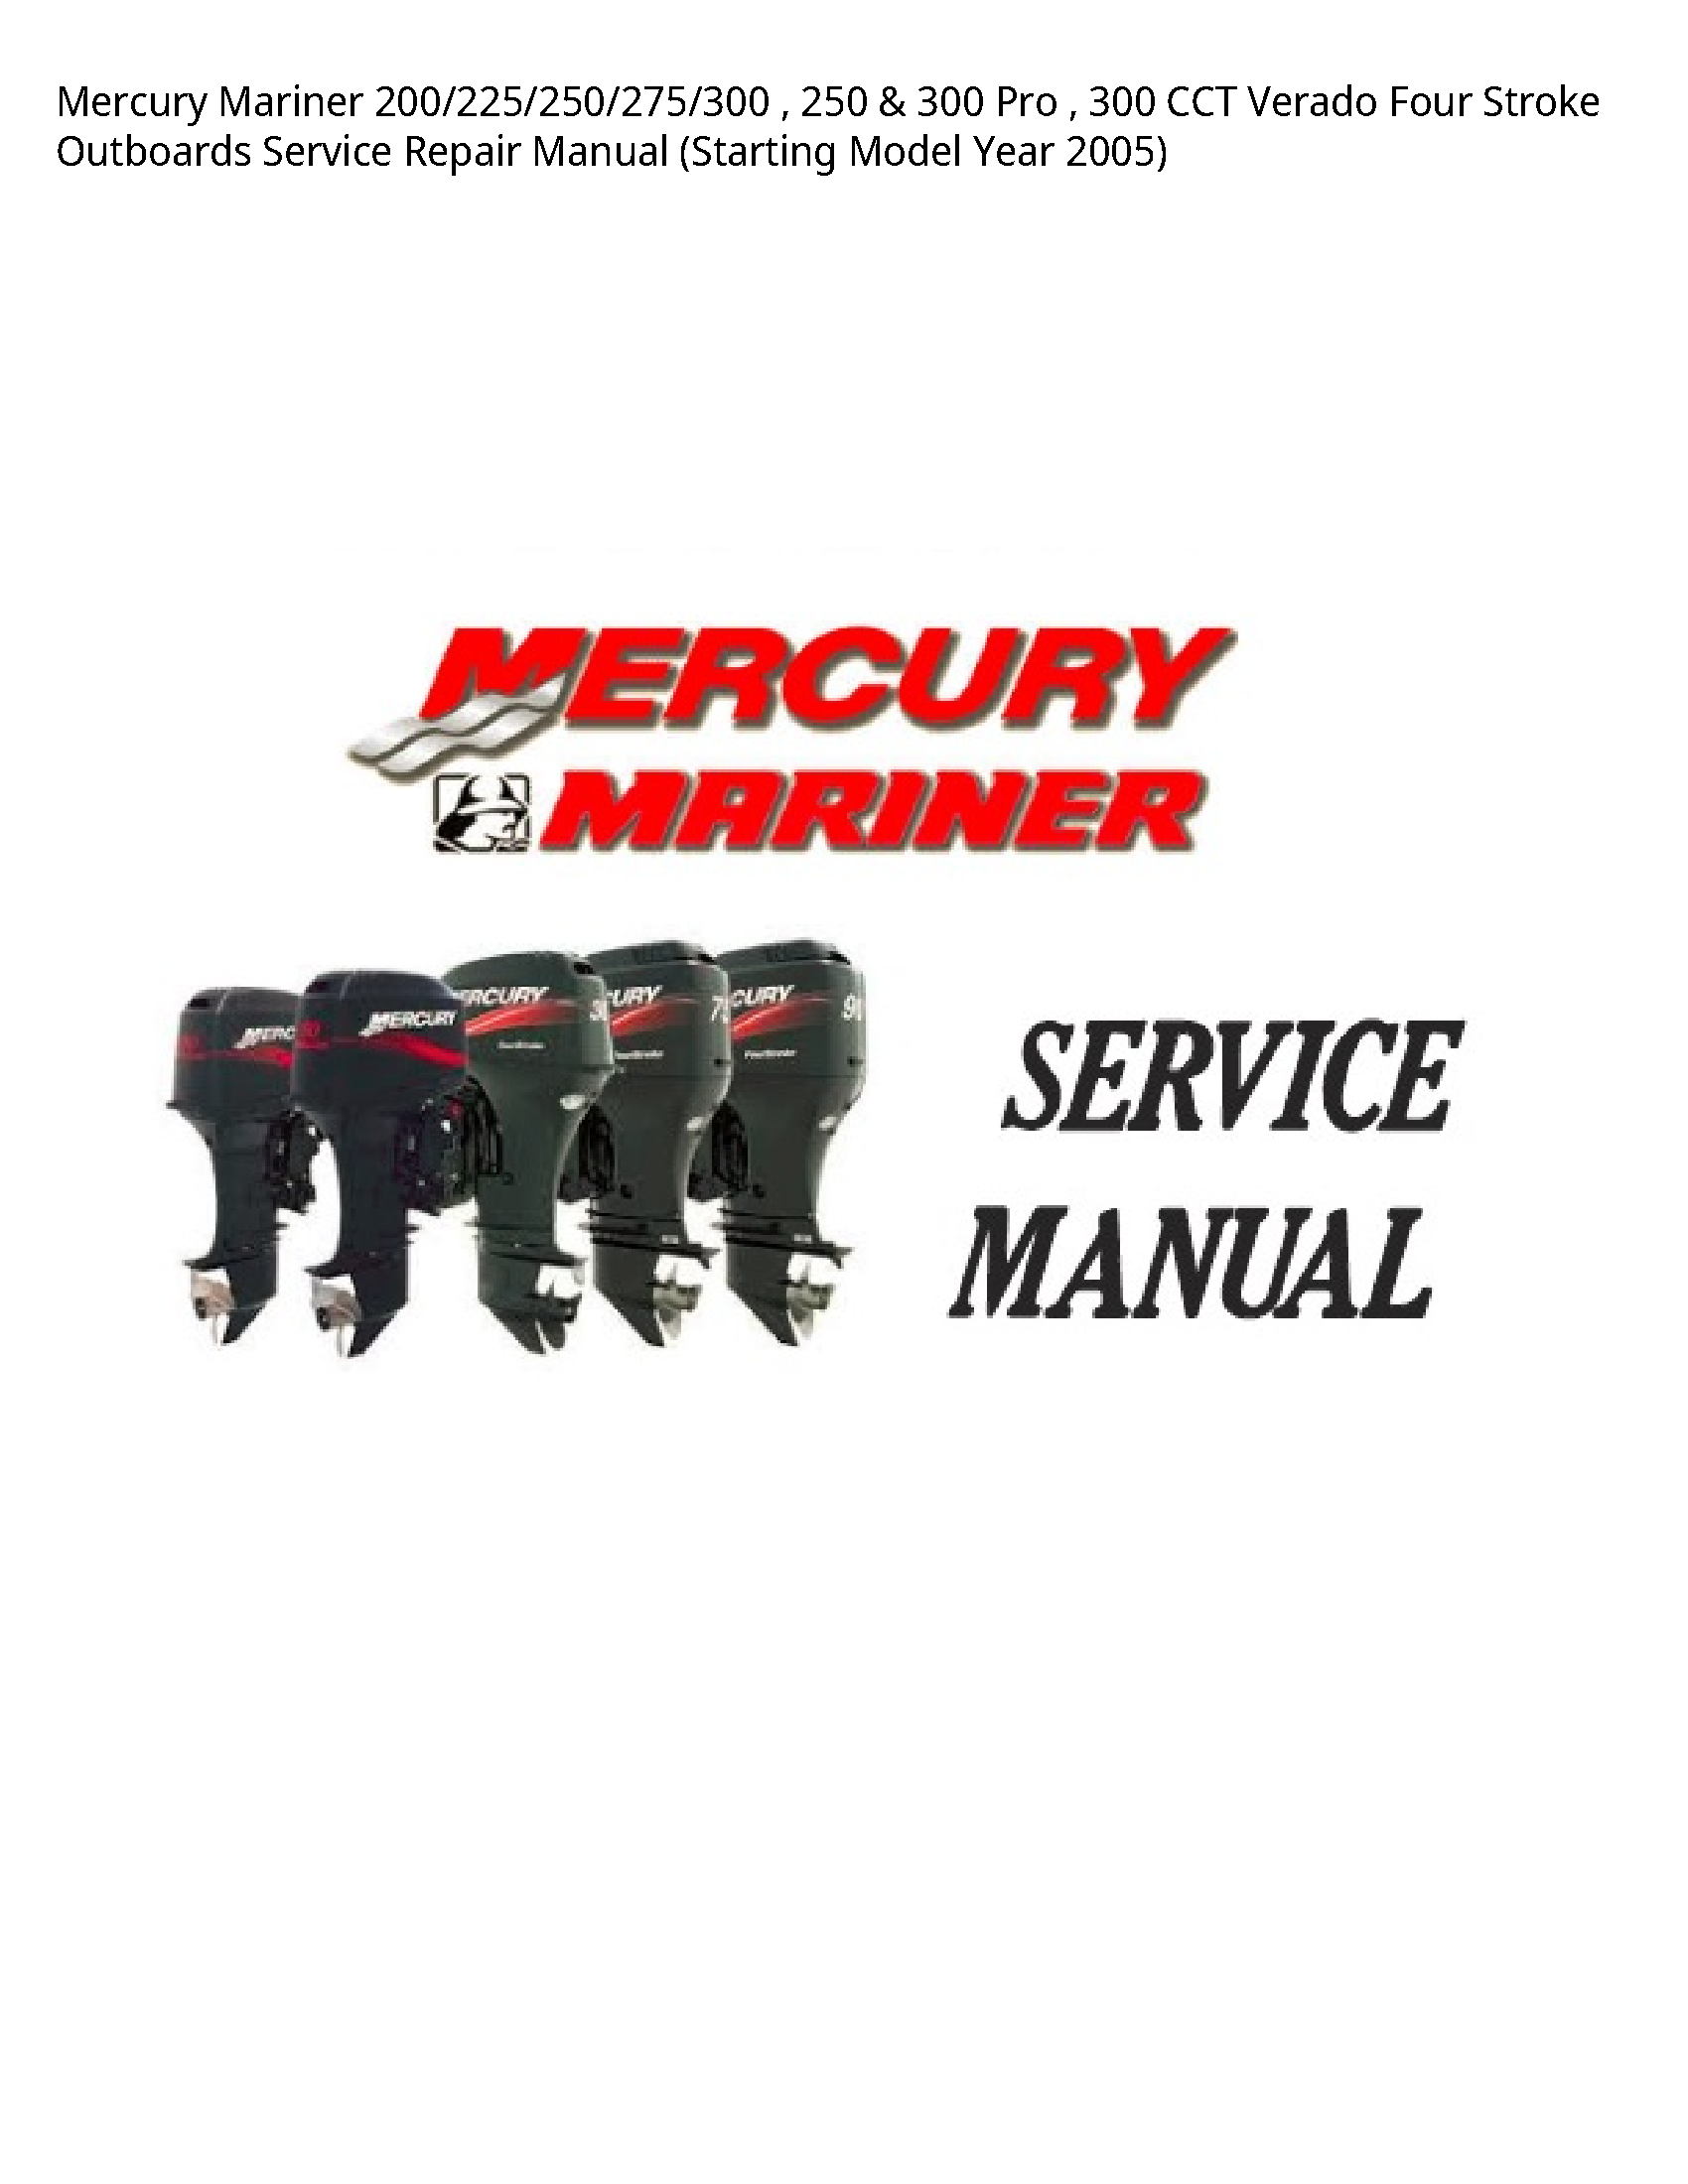 Mercury Mariner 200 Pro CCT Verado Four Stroke Outboards manual